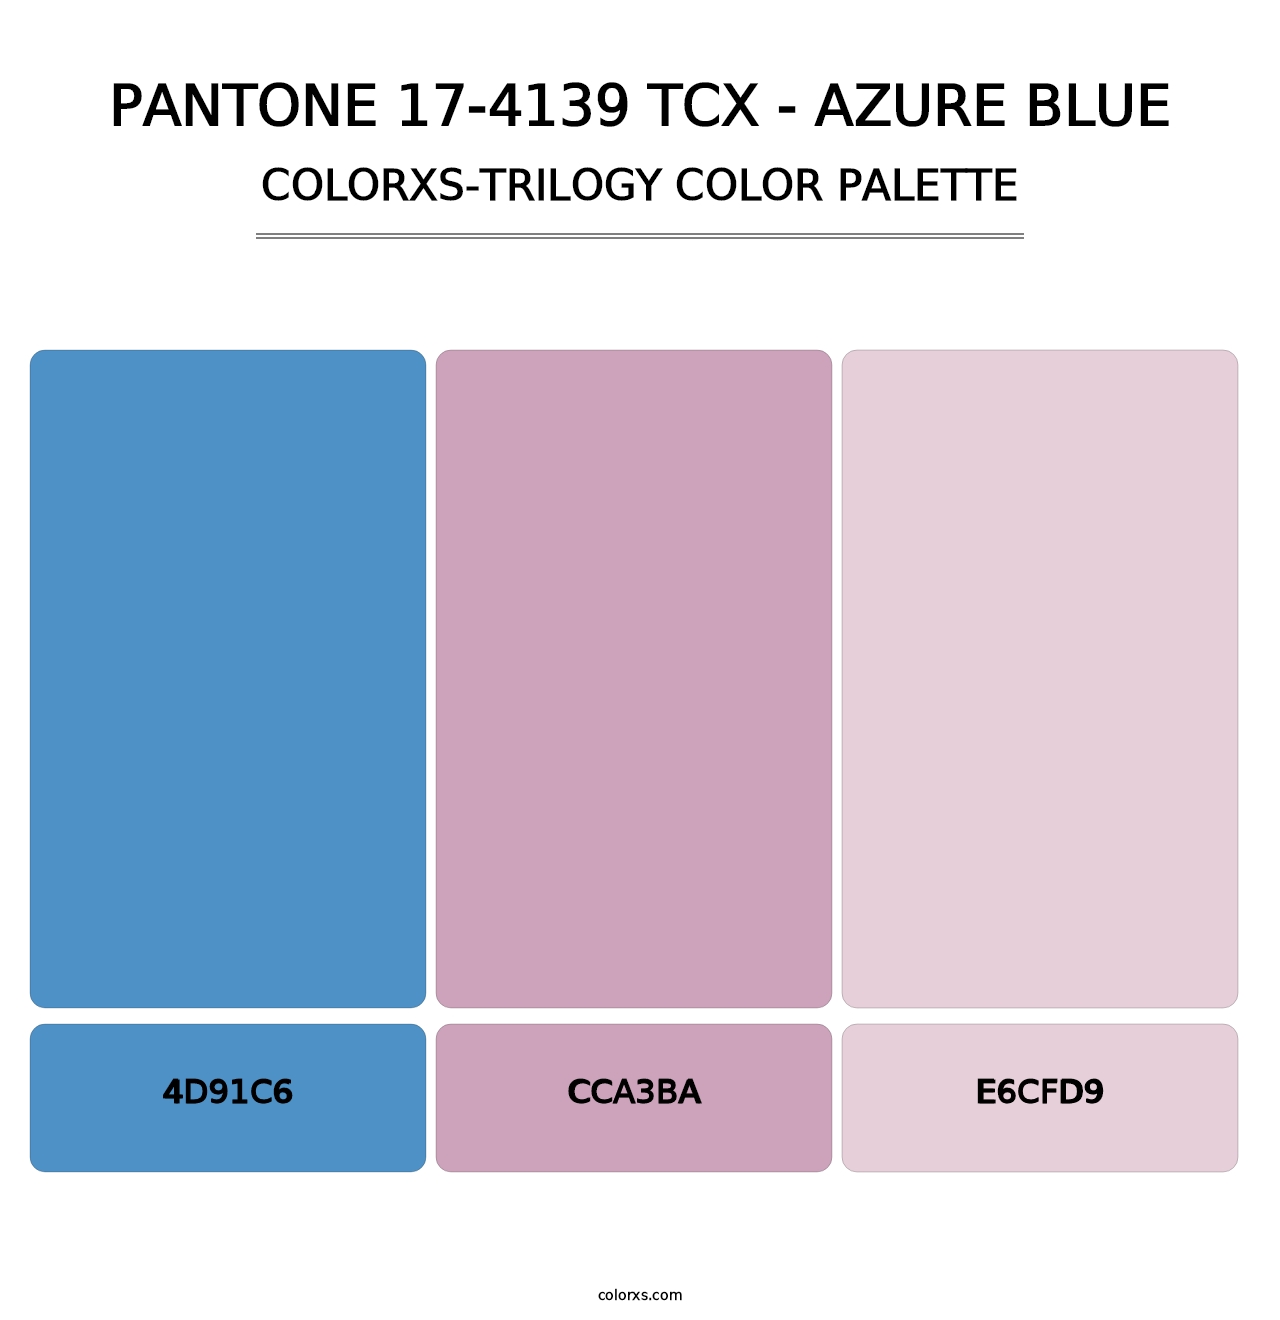 PANTONE 17-4139 TCX - Azure Blue - Colorxs Trilogy Palette